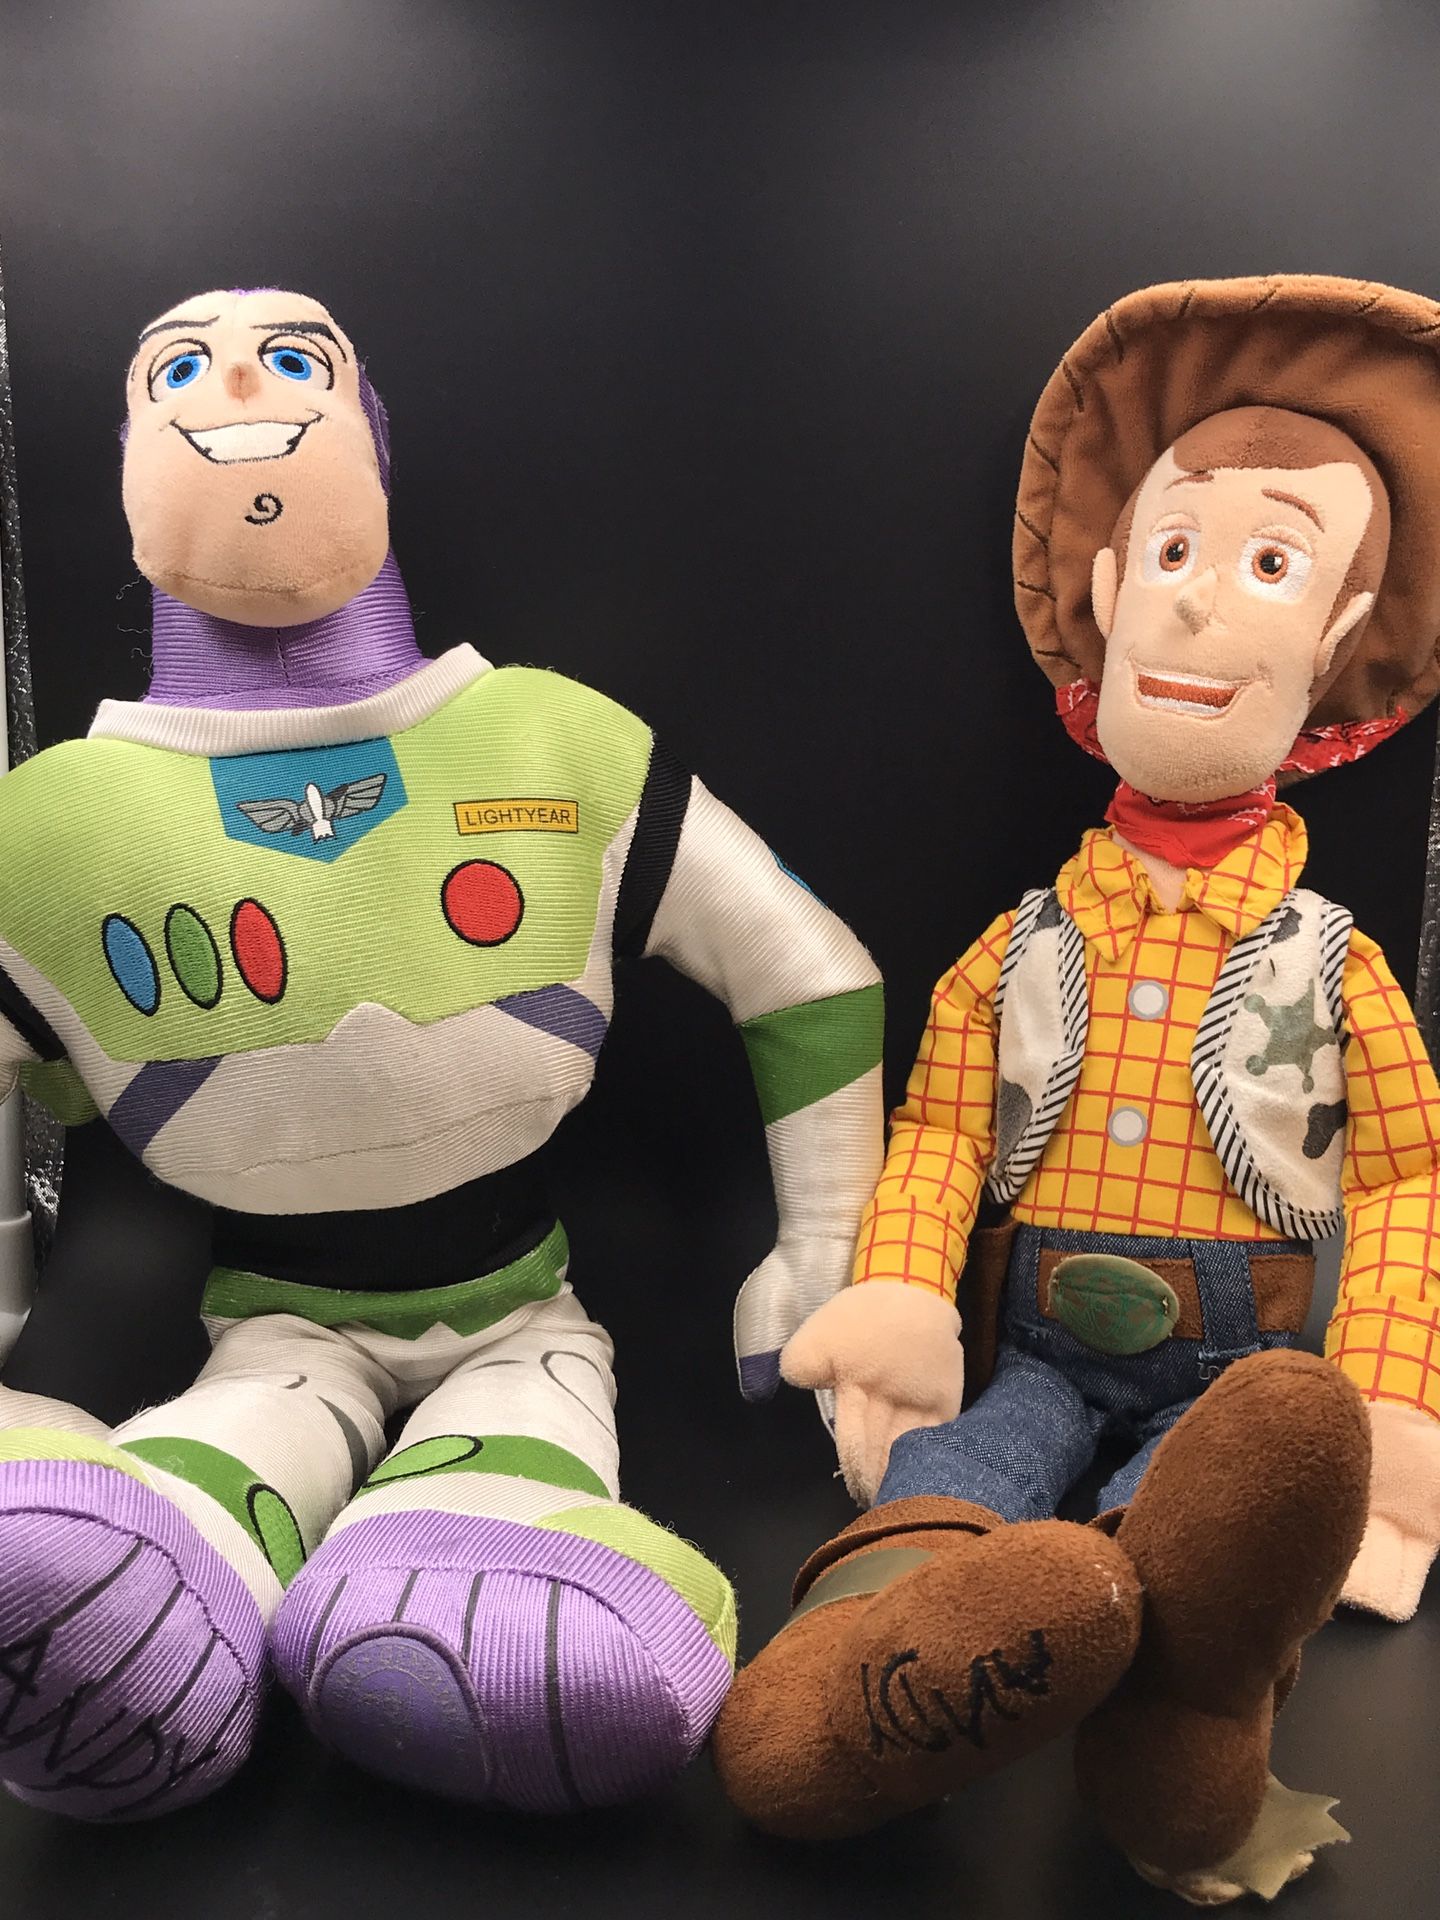 Buzz and woodie Disney dolls